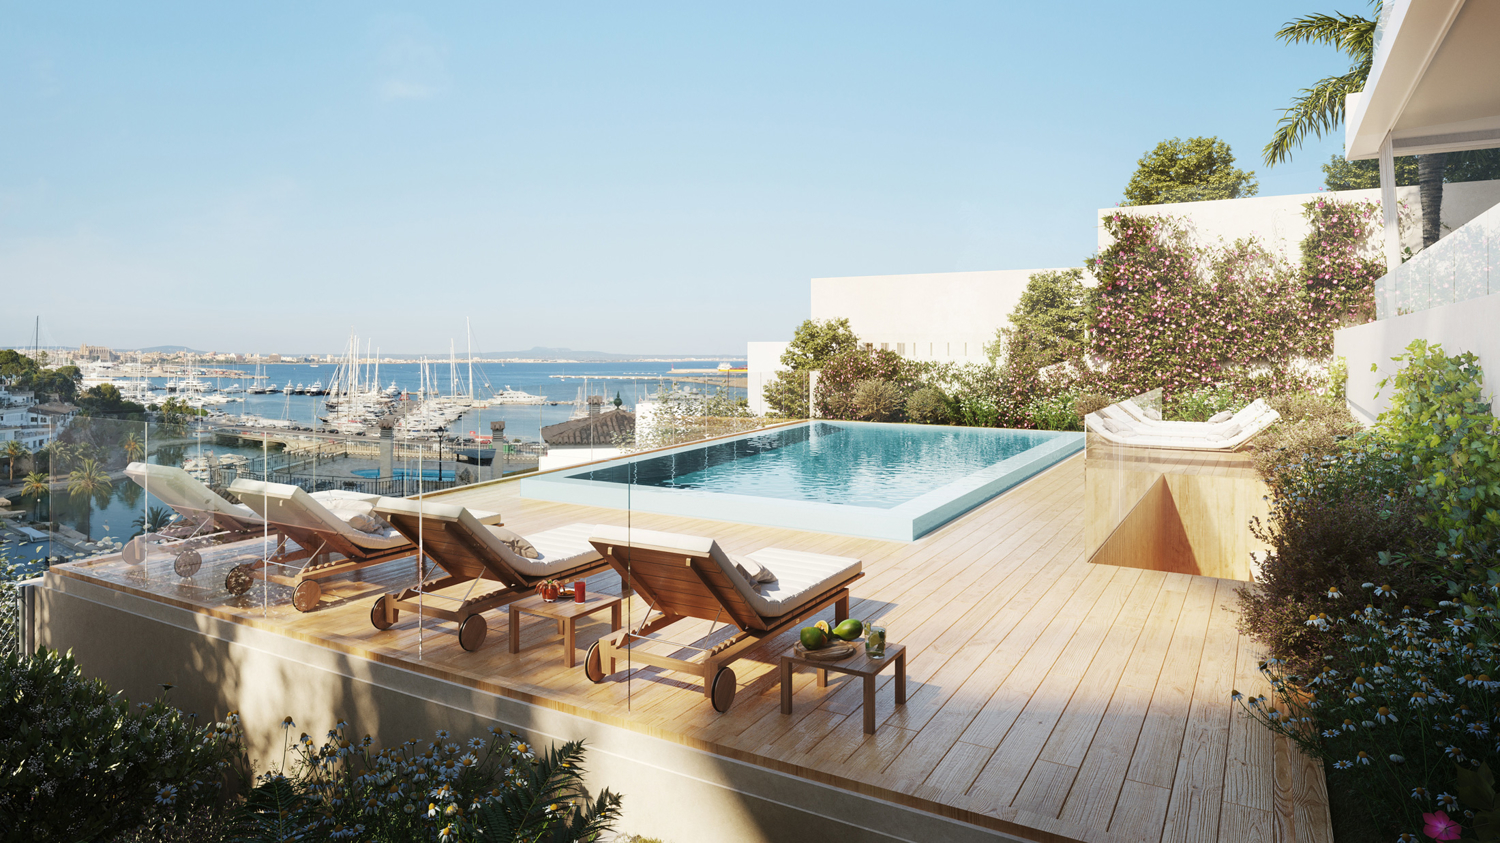 Piso con terraza, piscina comunitaria y vistas al mar